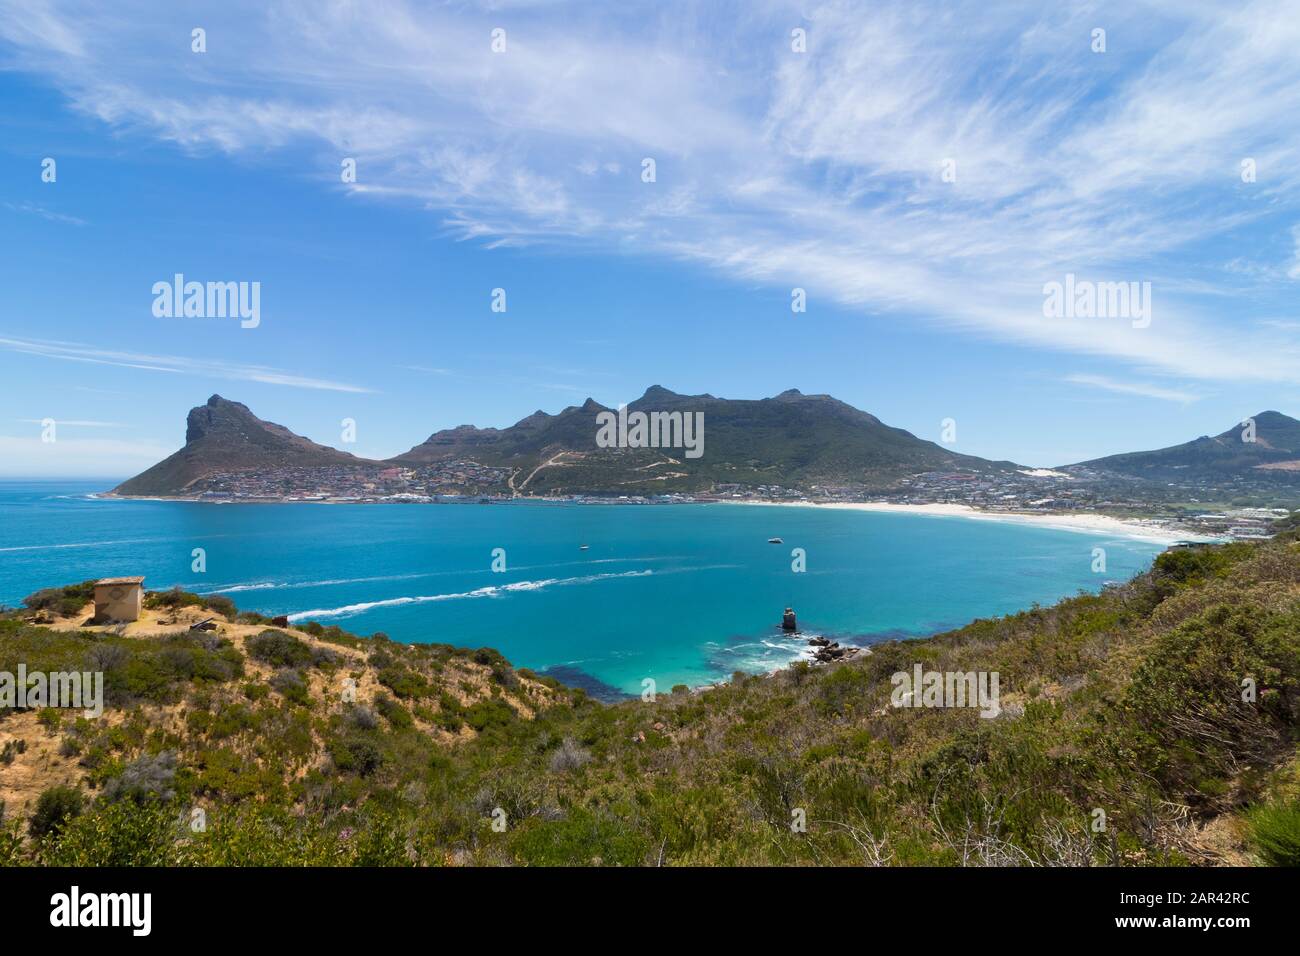 Atemberaubende Aussicht auf den Chapman's Peak am Meer eingefangen In Südafrika Stockfoto